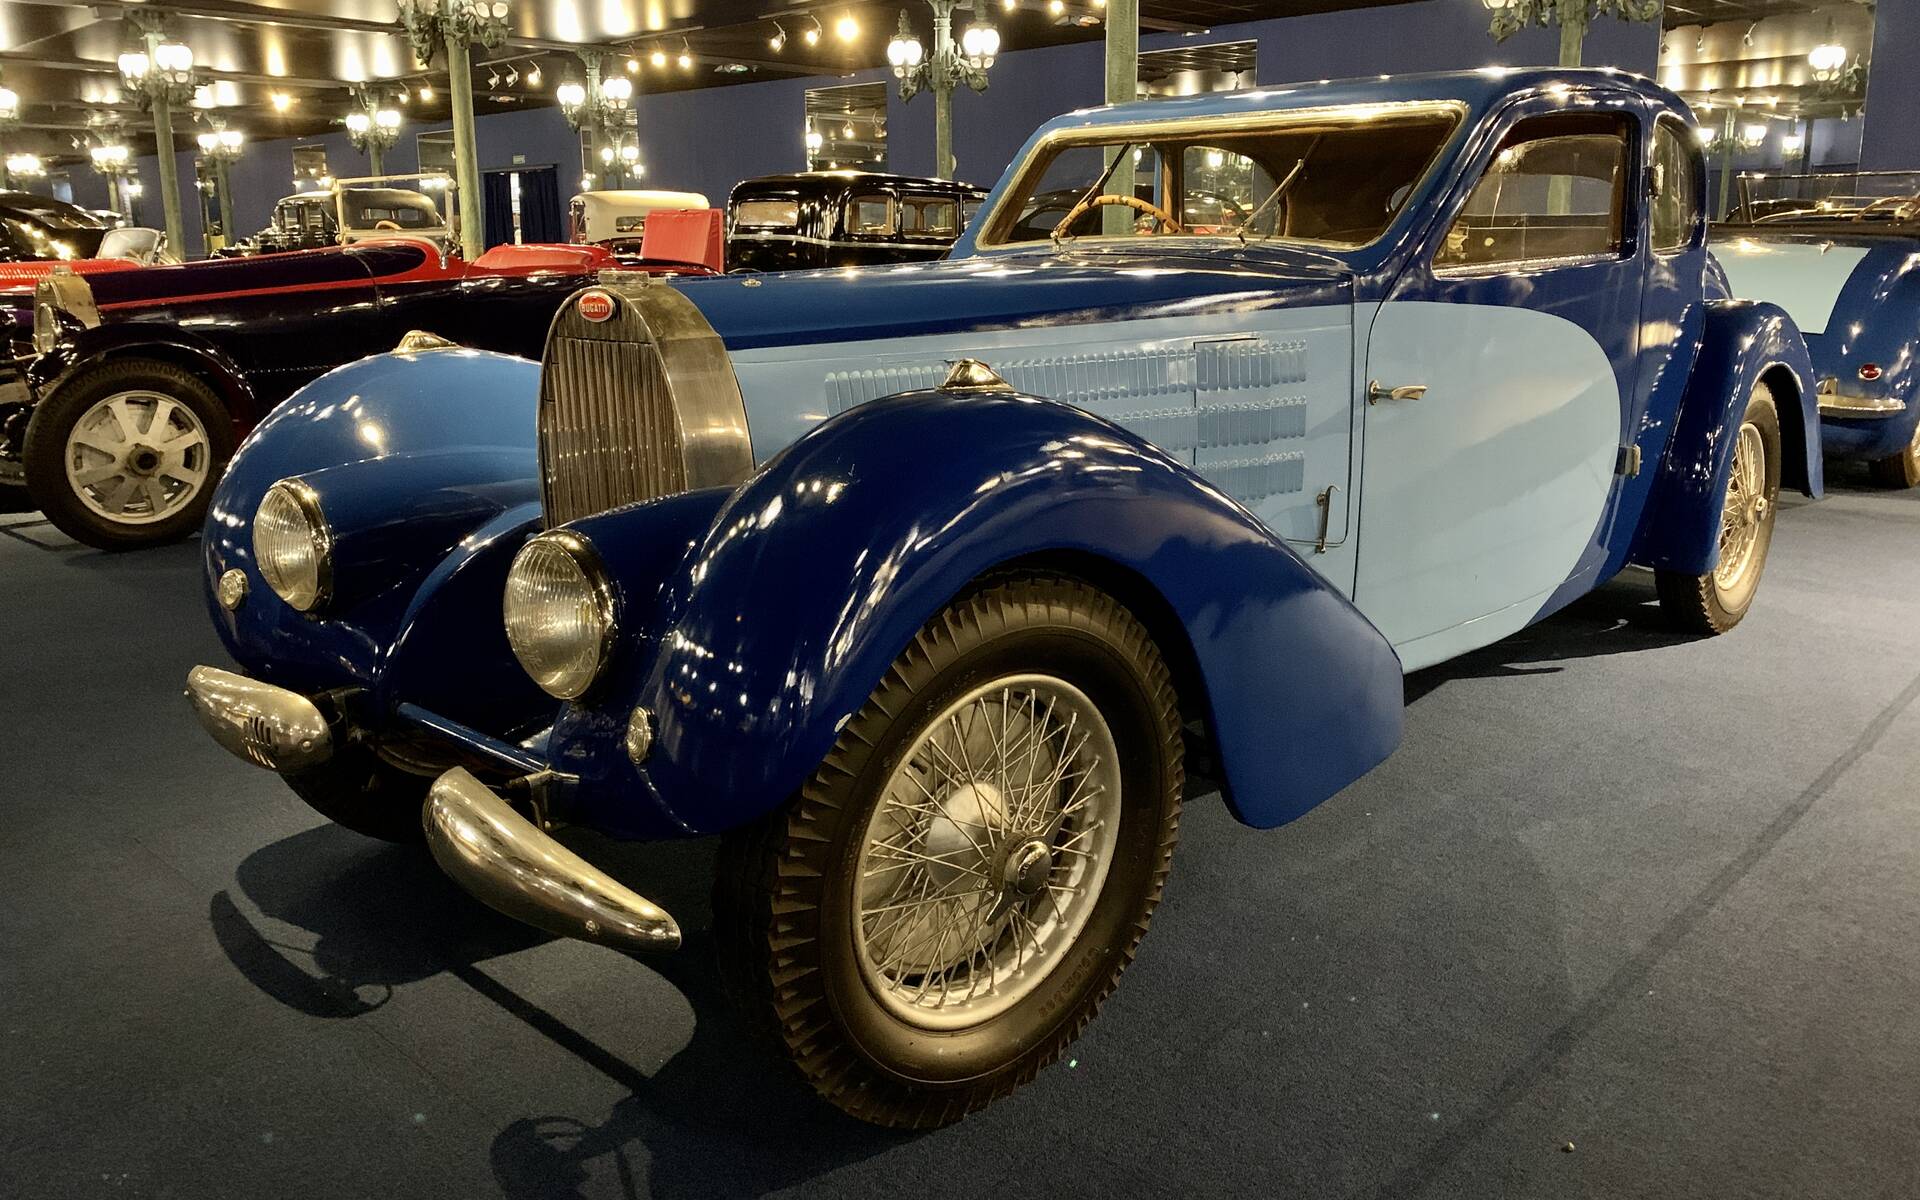 En photos : une centaine de Bugatti réunies dans un même musée 503090-en-photos-des-dizaines-de-bugatti-reunies-dans-un-meme-musee